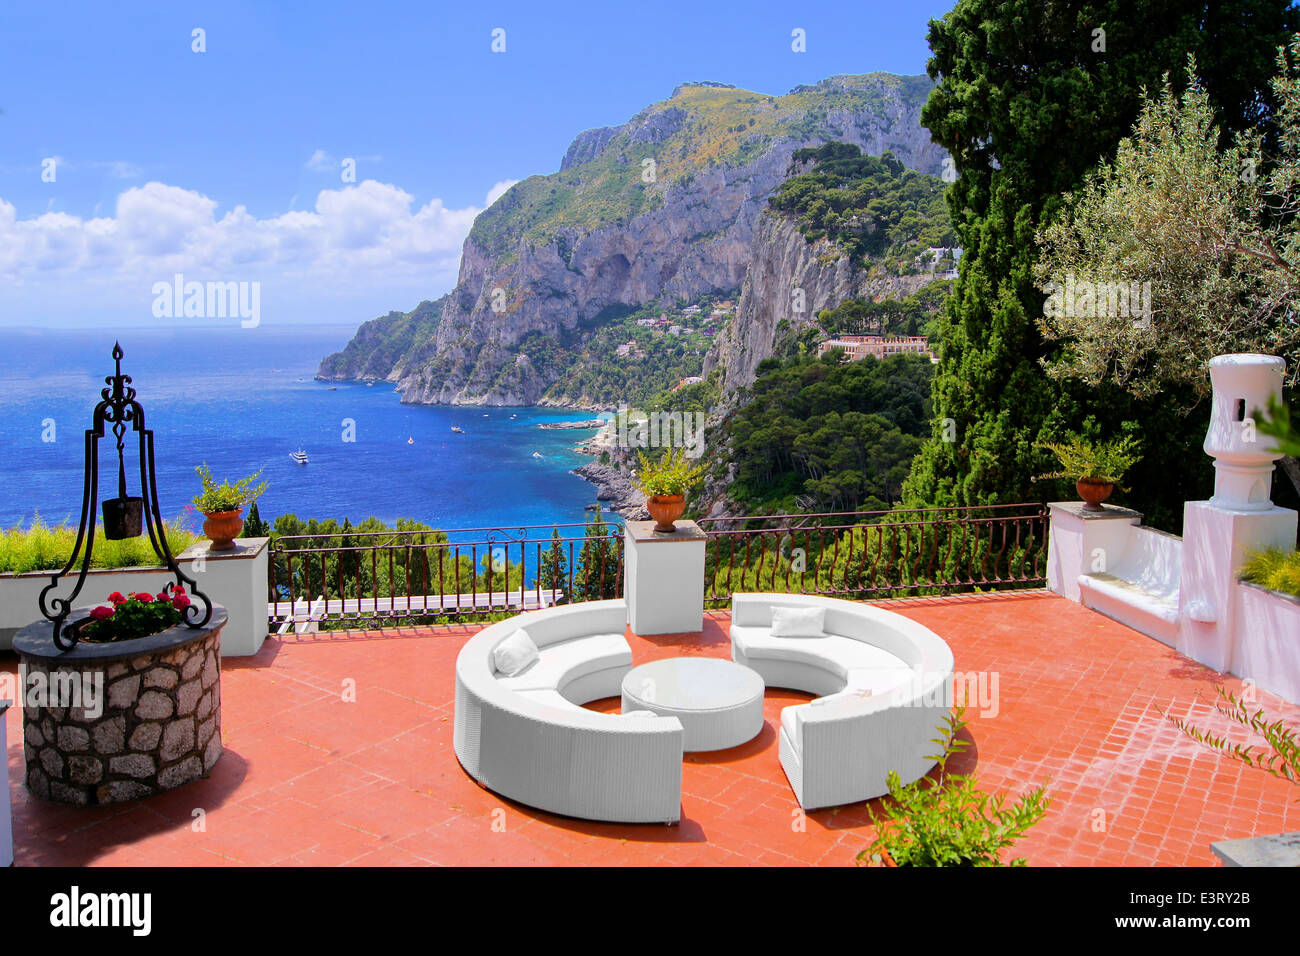 Vue depuis une terrasse de luxe sur l'île de Capri, Italie Banque D'Images